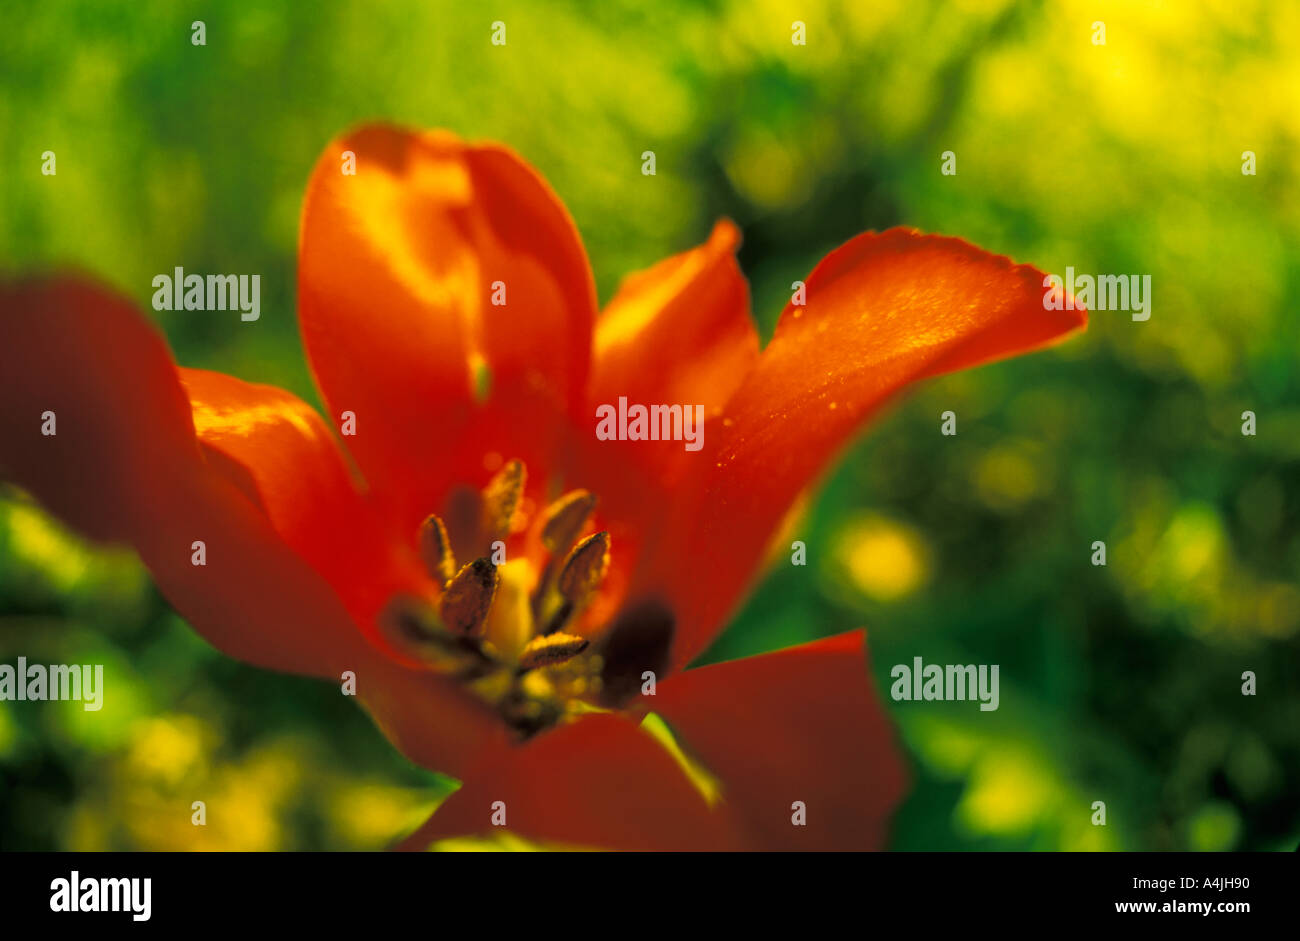 Tulip  in a garden Stock Photo